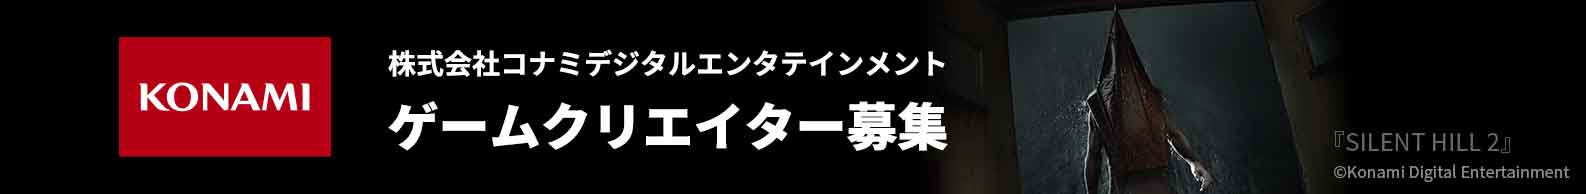 ゲームクリエイター大募集 - 株式会社コナミデジタルエンタテインメント